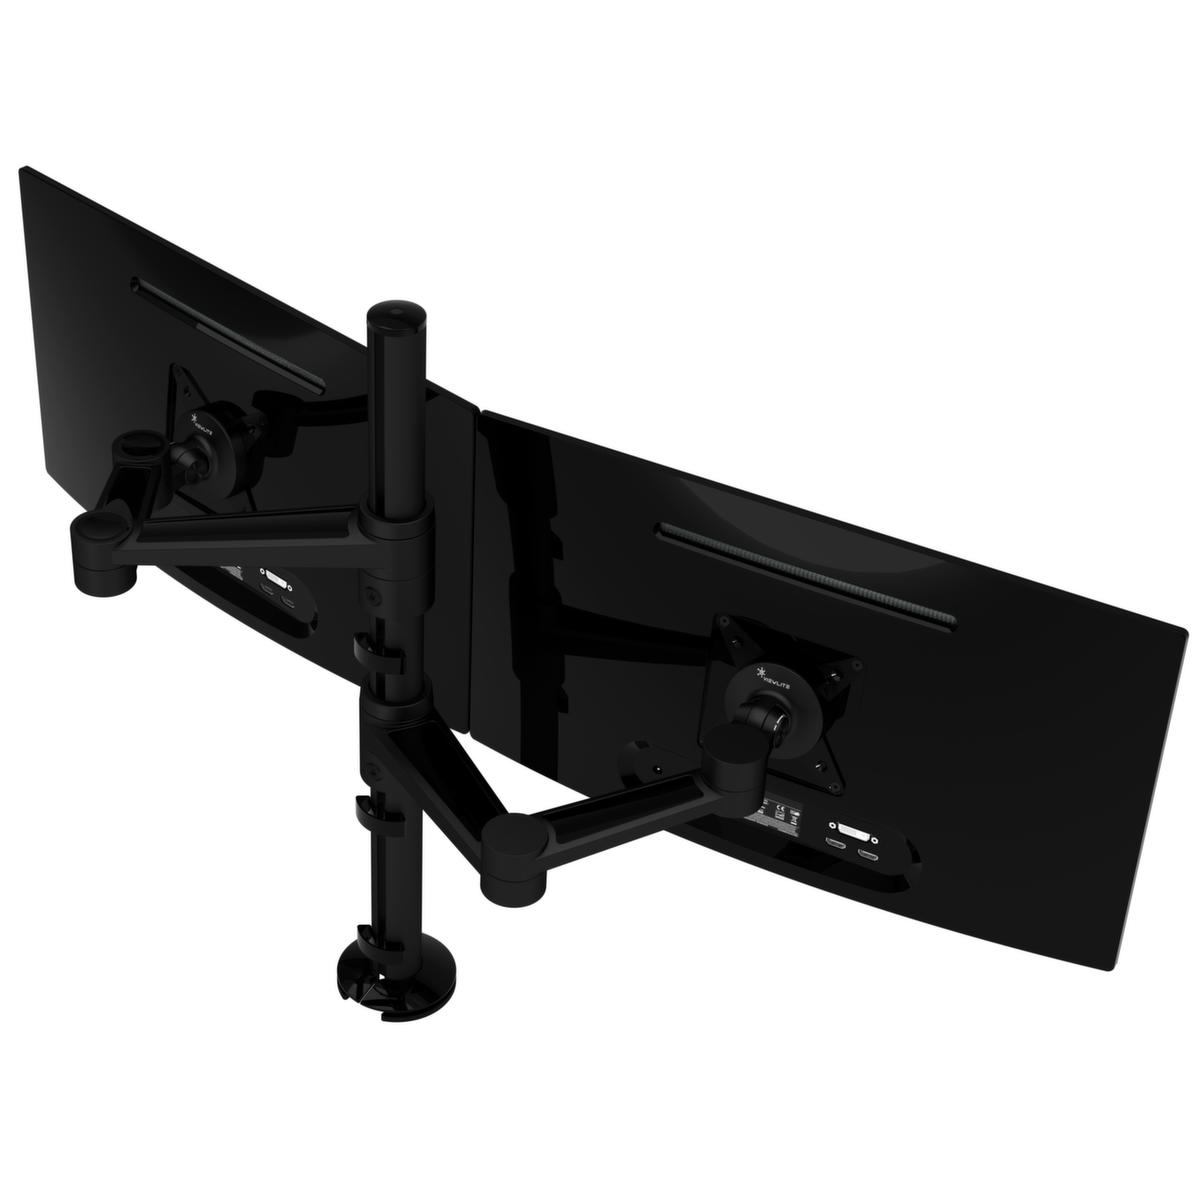 Monitorarm ViewLite voor 2 beeldschermen, hoogte 600 mm  ZOOM